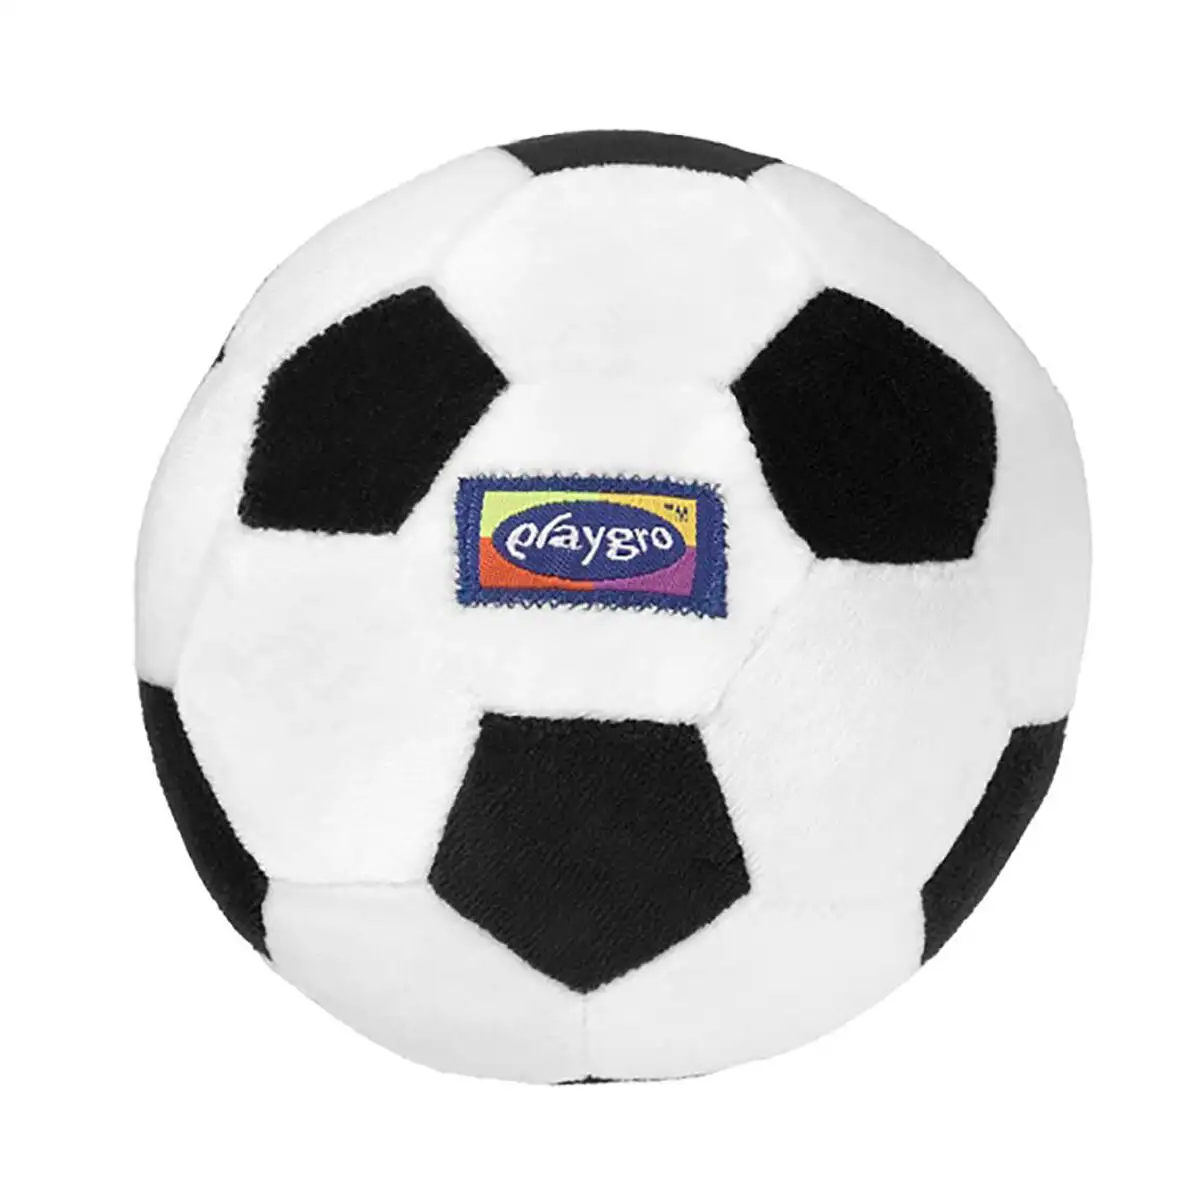 Ballon playgro my first soccer ball reconditionne a _5578. DIAYTAR SENEGAL - L'Art de Vivre le Shopping en Ligne. Découvrez notre plateforme intuitive et trouvez des produits qui vous inspirent et vous enchantent, à chaque clic.